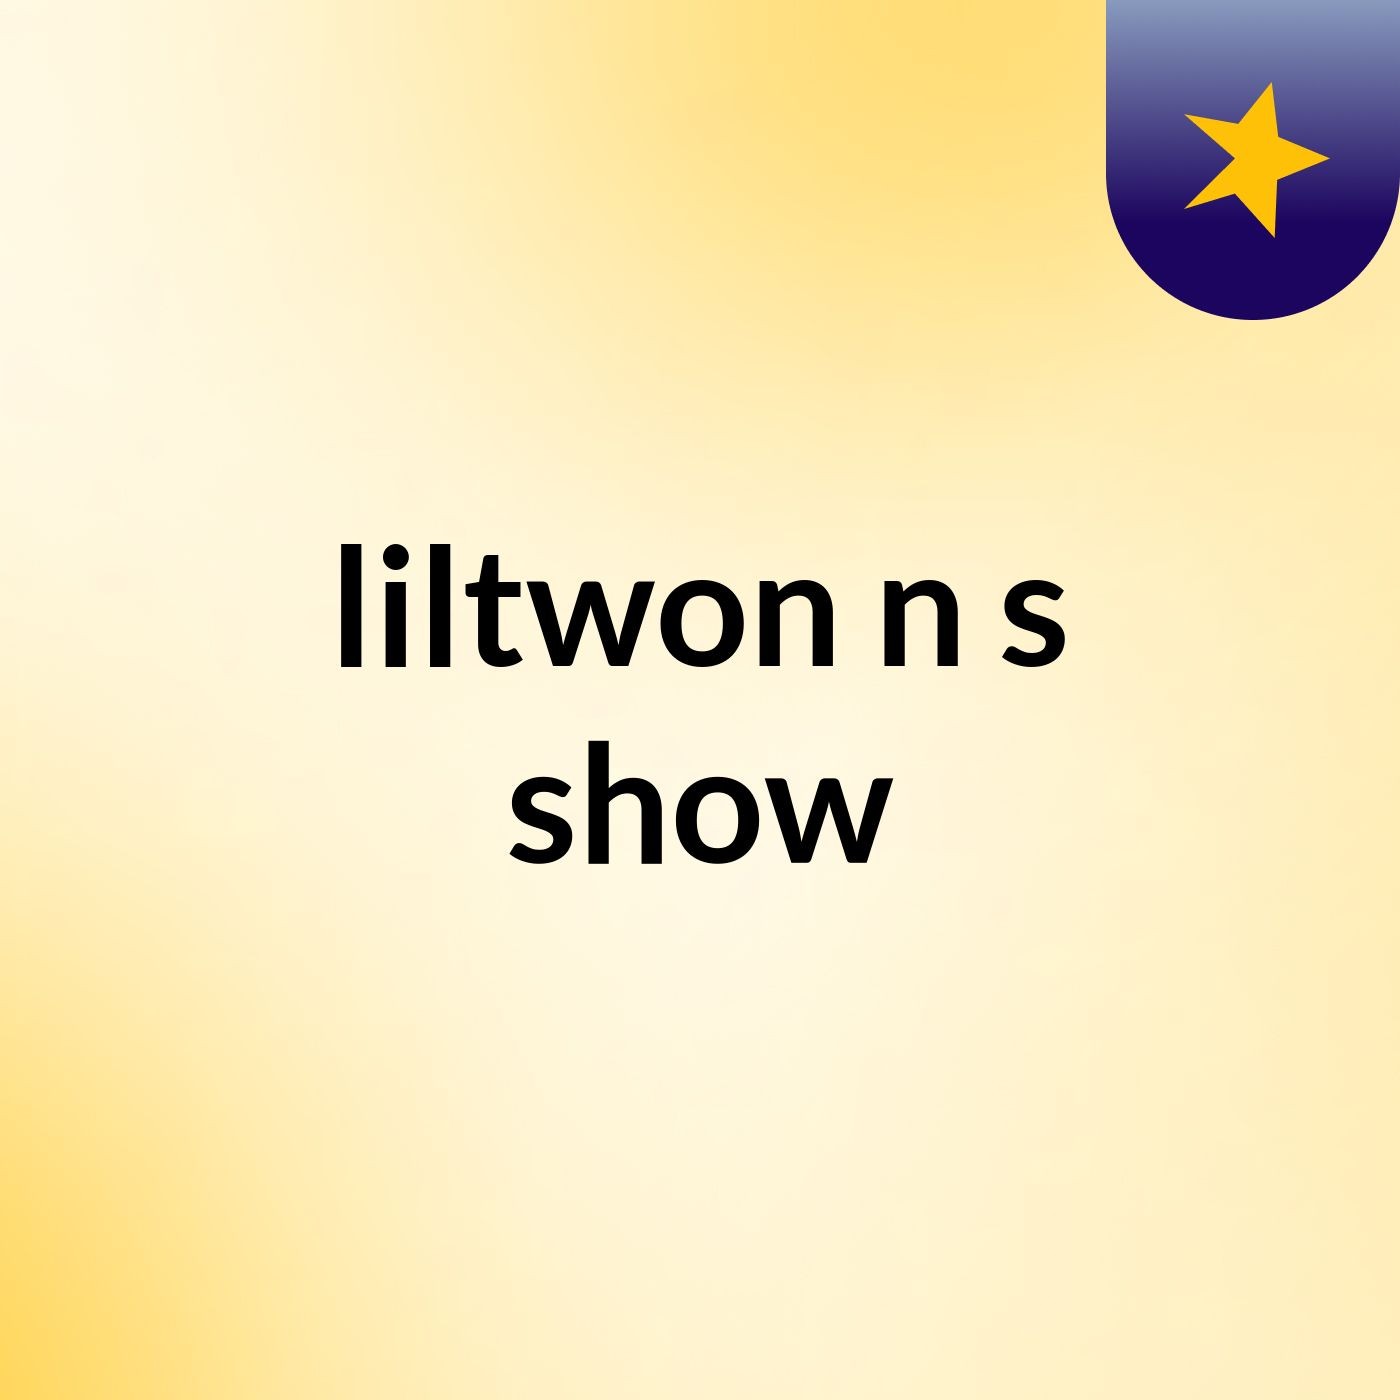 liltwon n's show